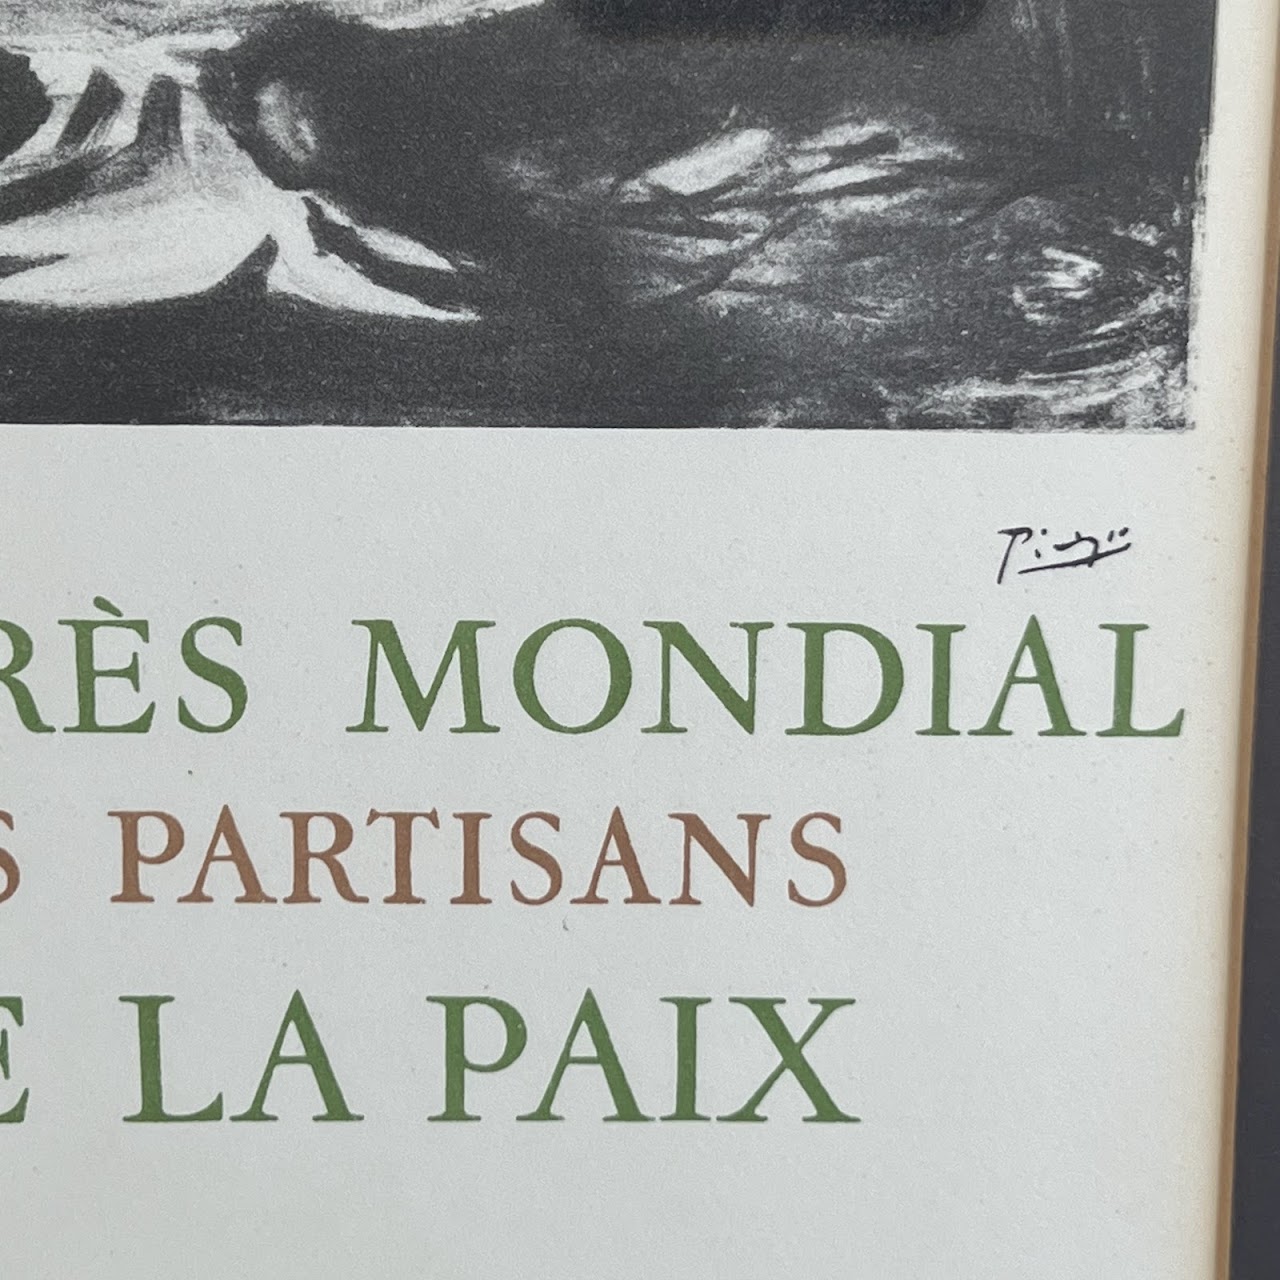 Pablo Picasso 'Congrès Mondial des Partisans de la Paix' Galerie Maeght Mourlot Lithograph Bookplate, 1959